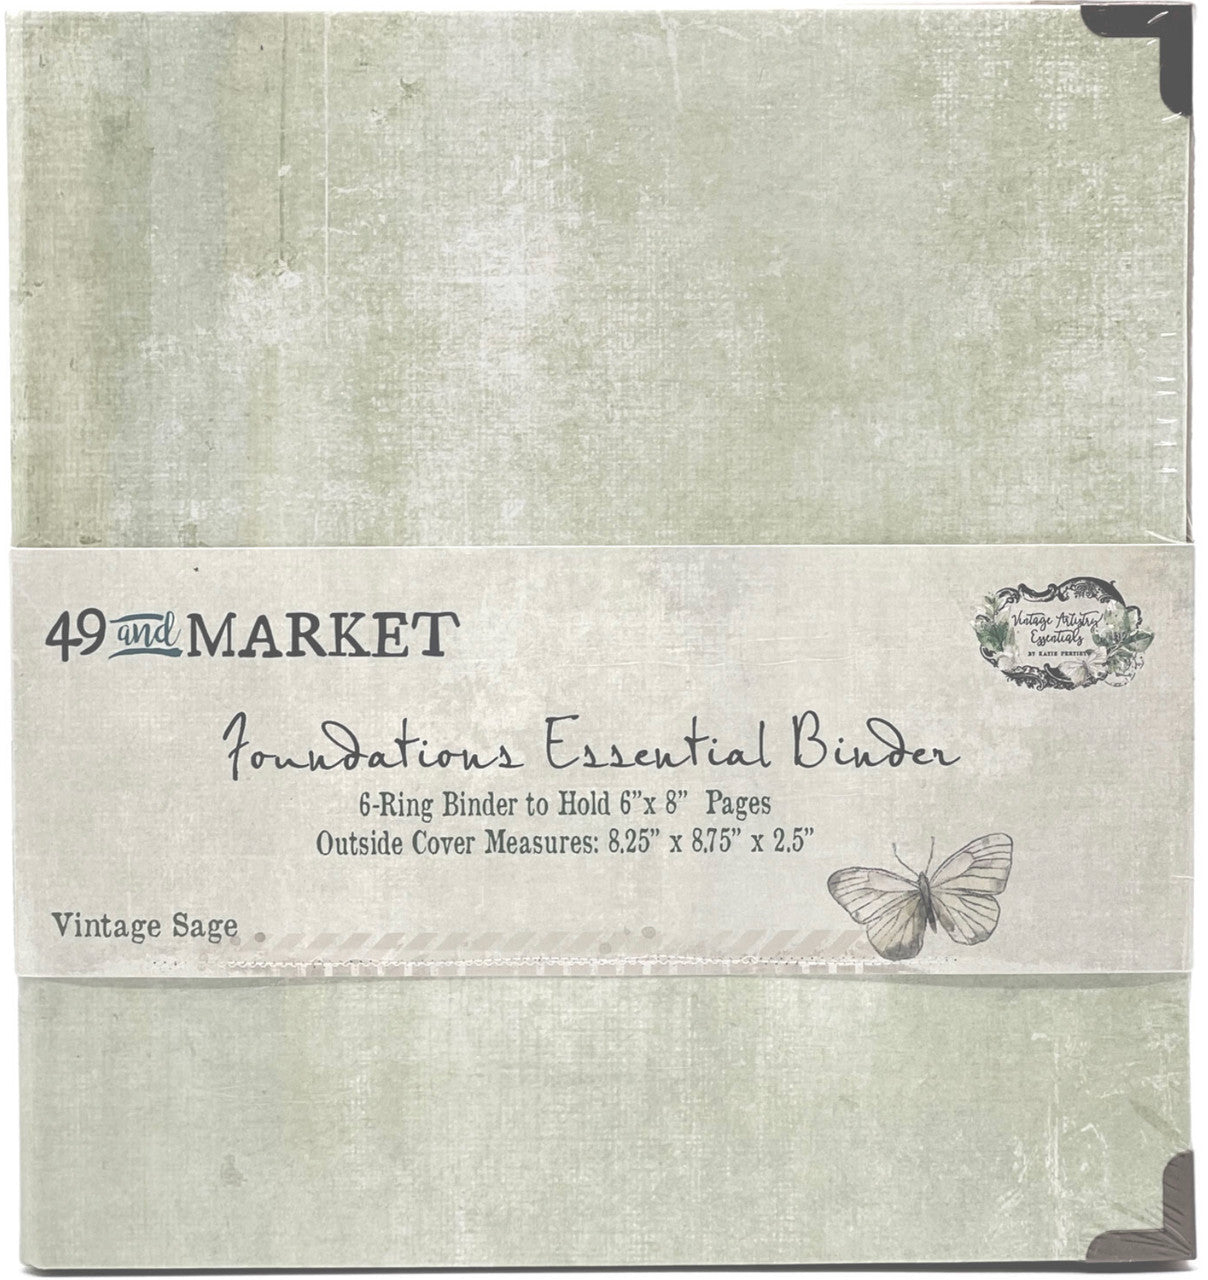 49 & Market Foundations Essential Binder - Vintage Sage